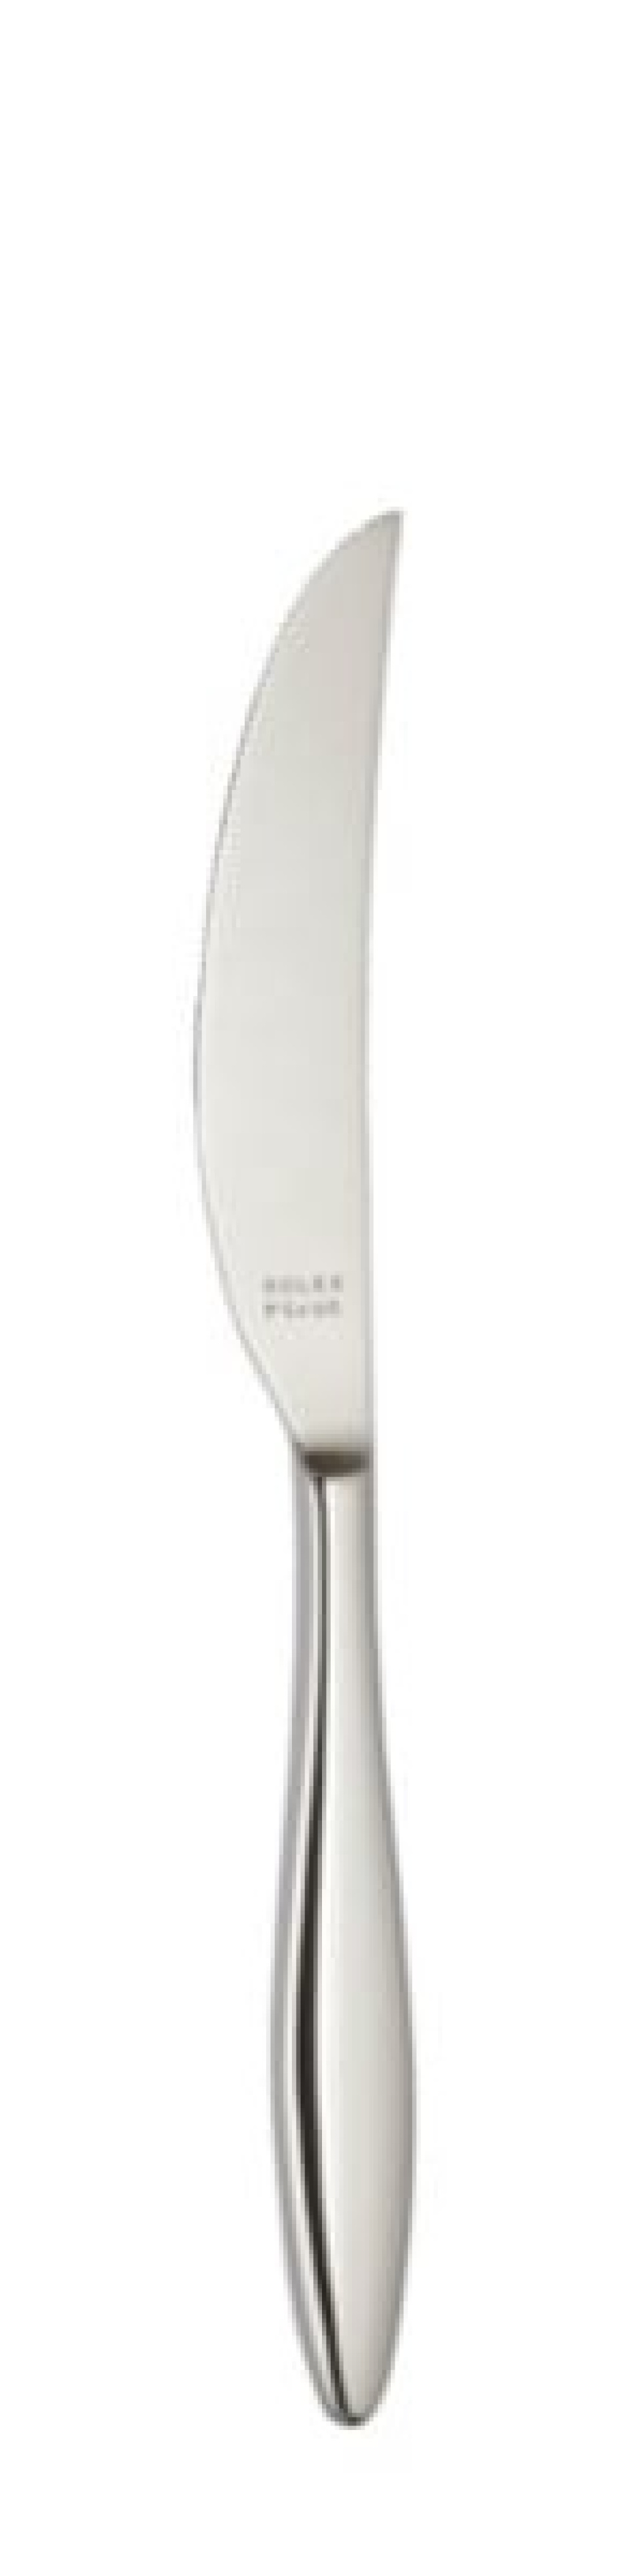 Terra Bordskniv 239 mm - Solex i gruppen Dukning / Bestick / Knivar hos KitchenLab (1284-21645)